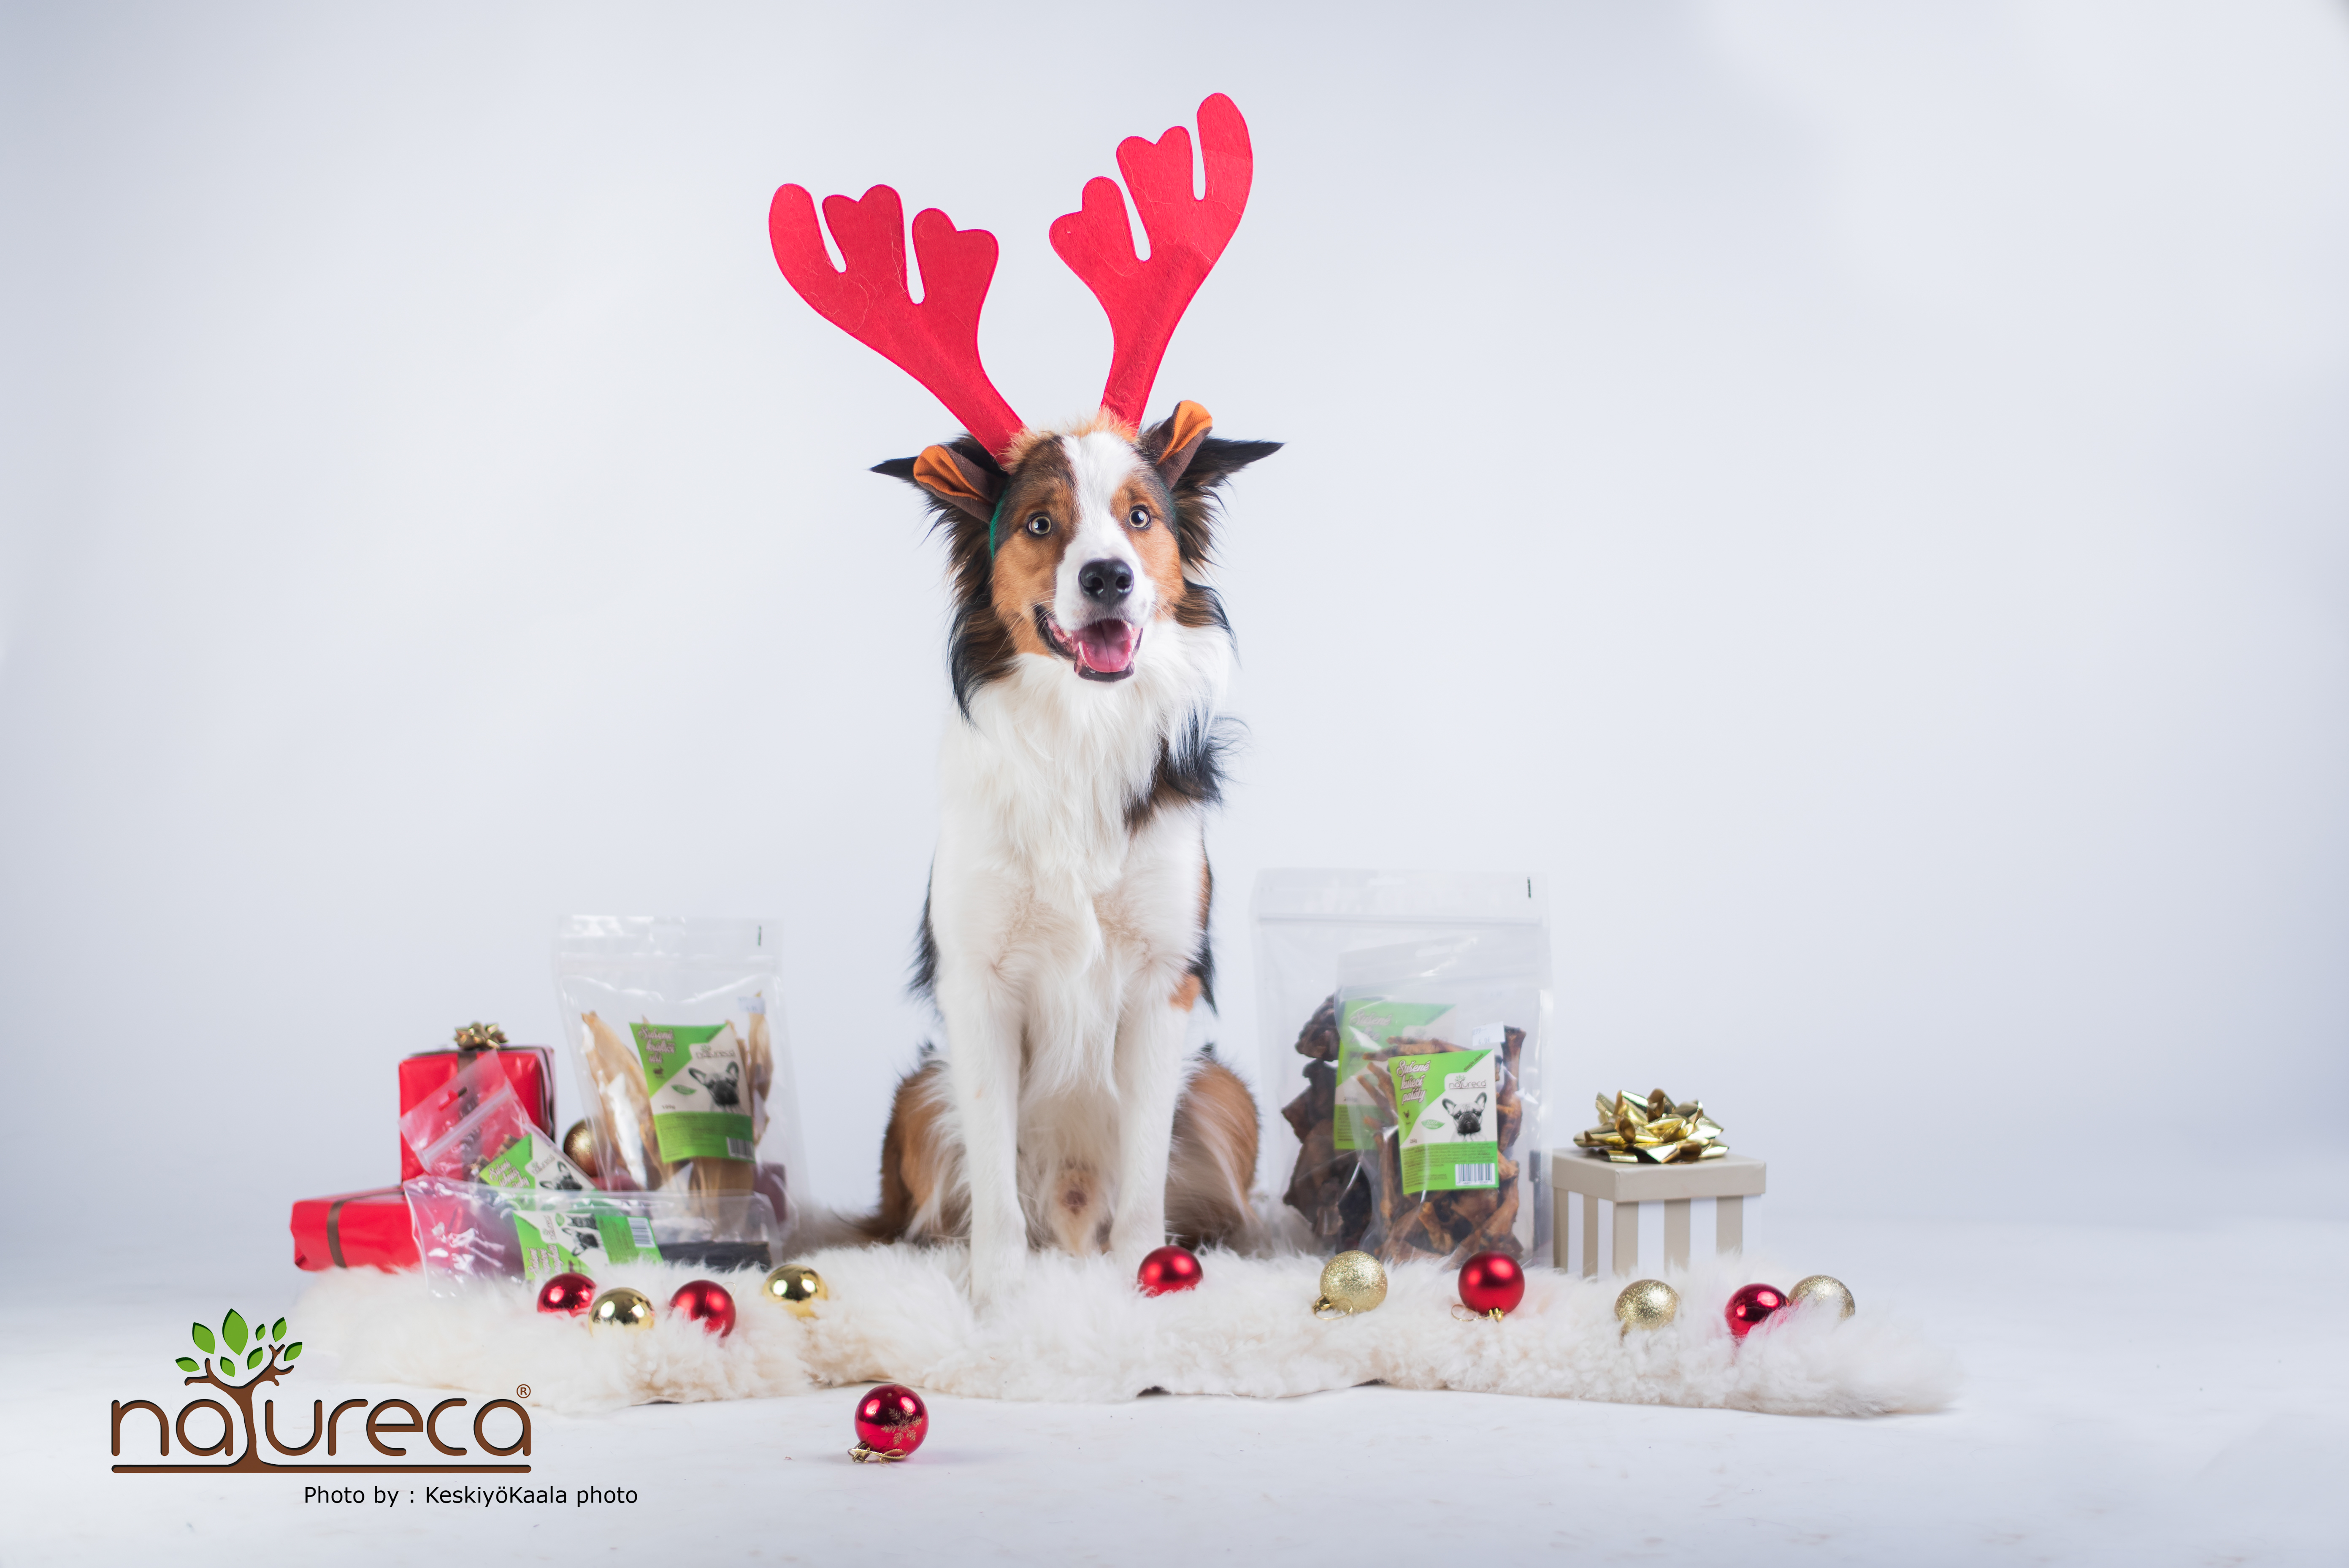 Vianočný DogBox Maxi pre veľké psy - 6ks produktov